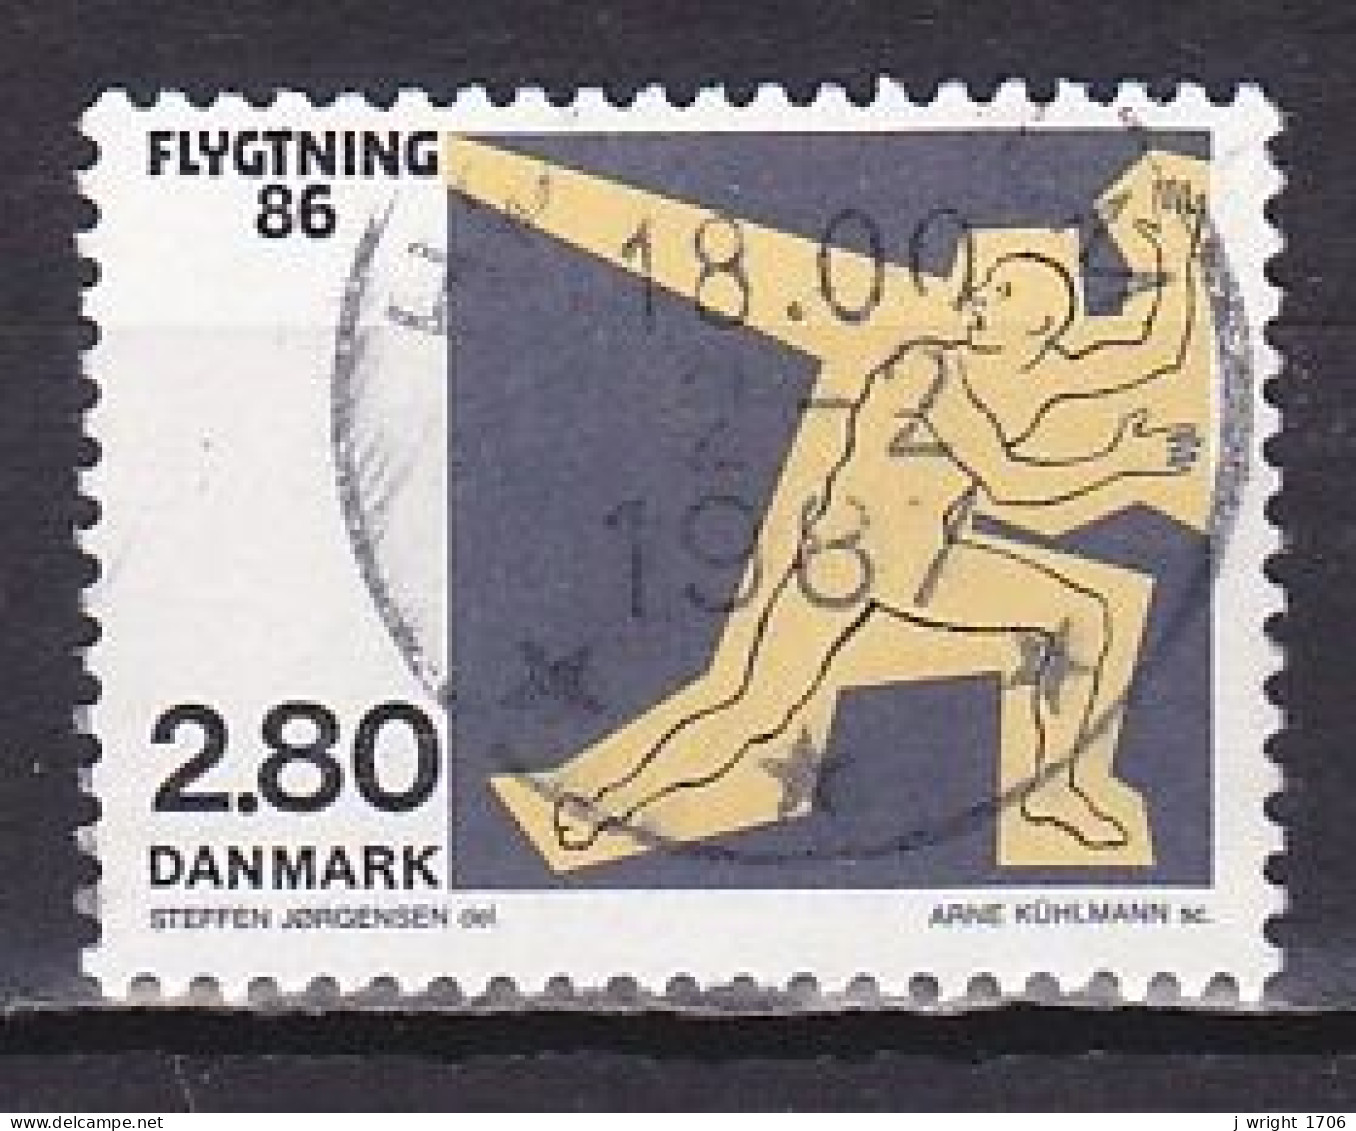 Denmark, 1986, Refugees 86, 2.80kr, USED - Usati